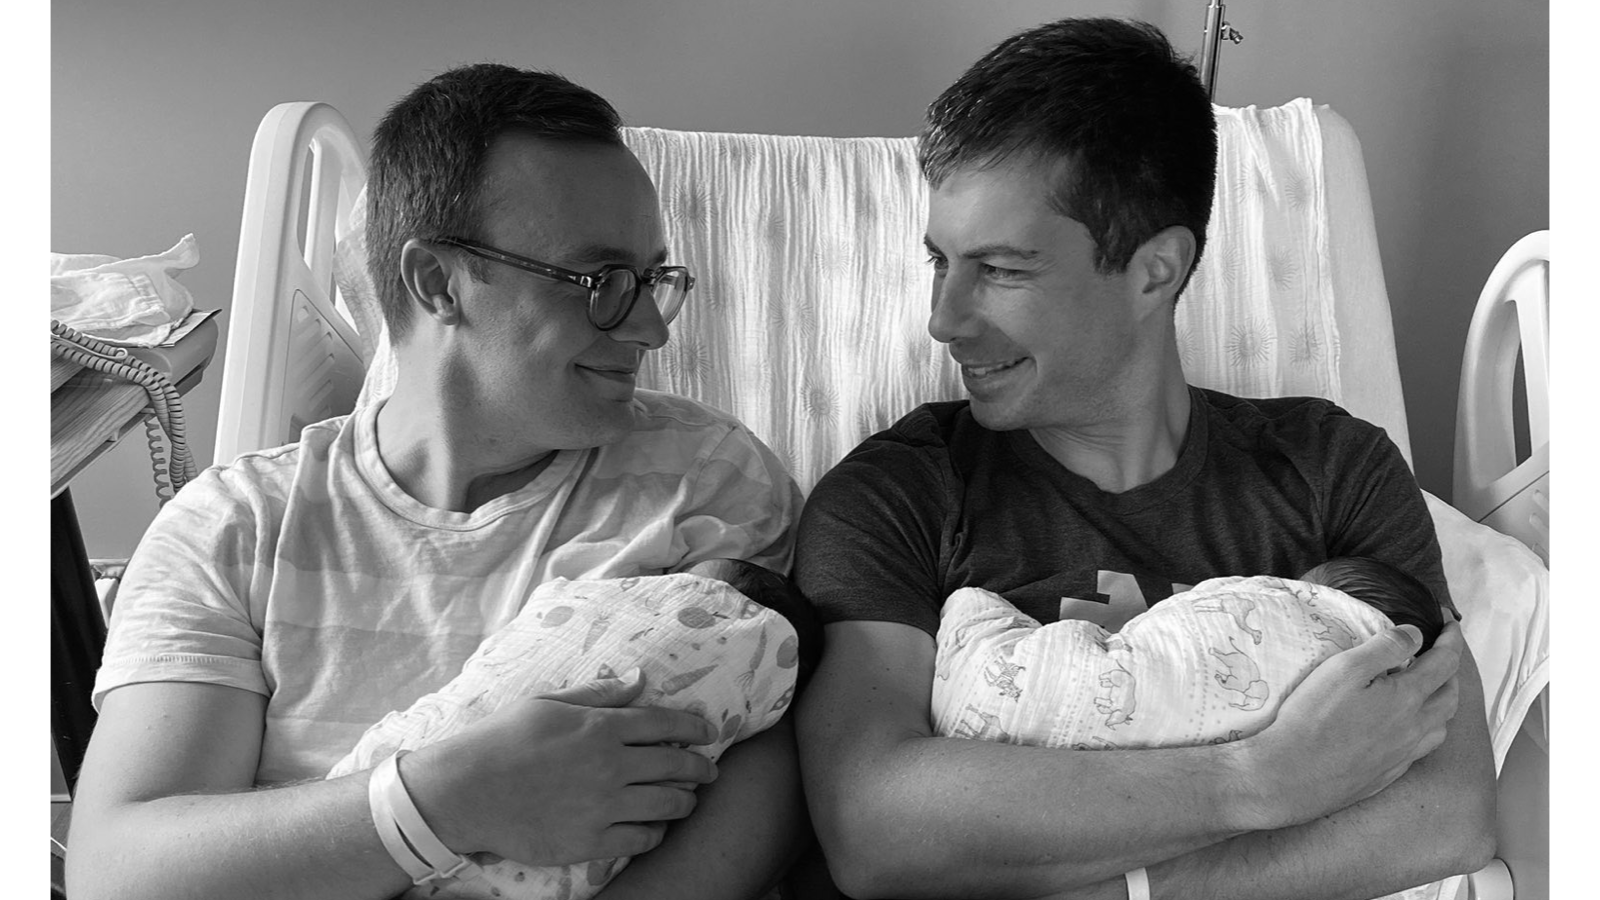 Chasten (left) and Pete Buttigieg (right) holding their newborn children